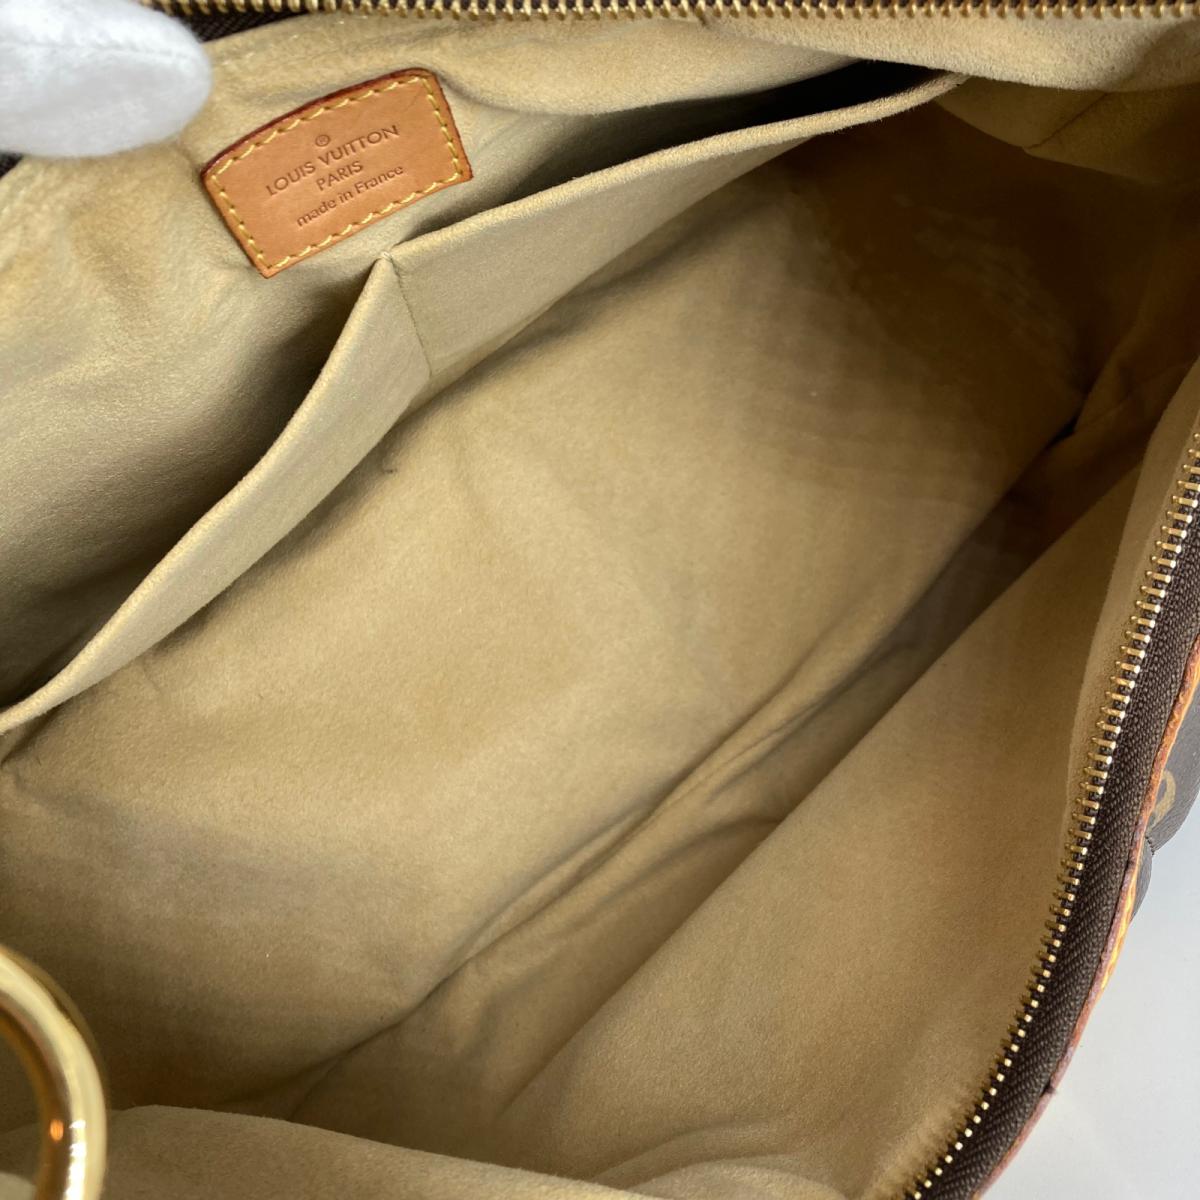 Louis Vuitton M41453 Etoile City Bag